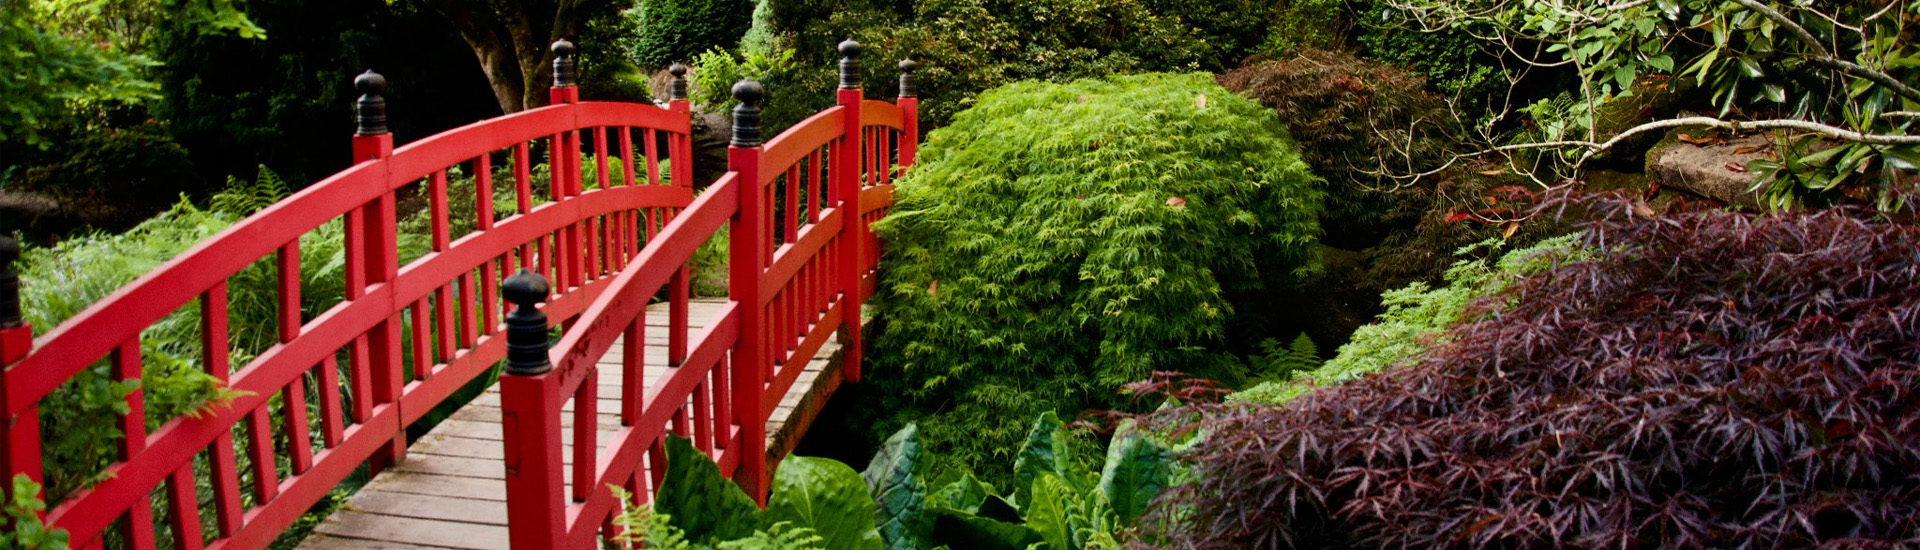 Le pont rouge traditionnel élément des jardins japonais est entouré d'espèces botaniques tel qu'un érable rouge et des bonsaï.